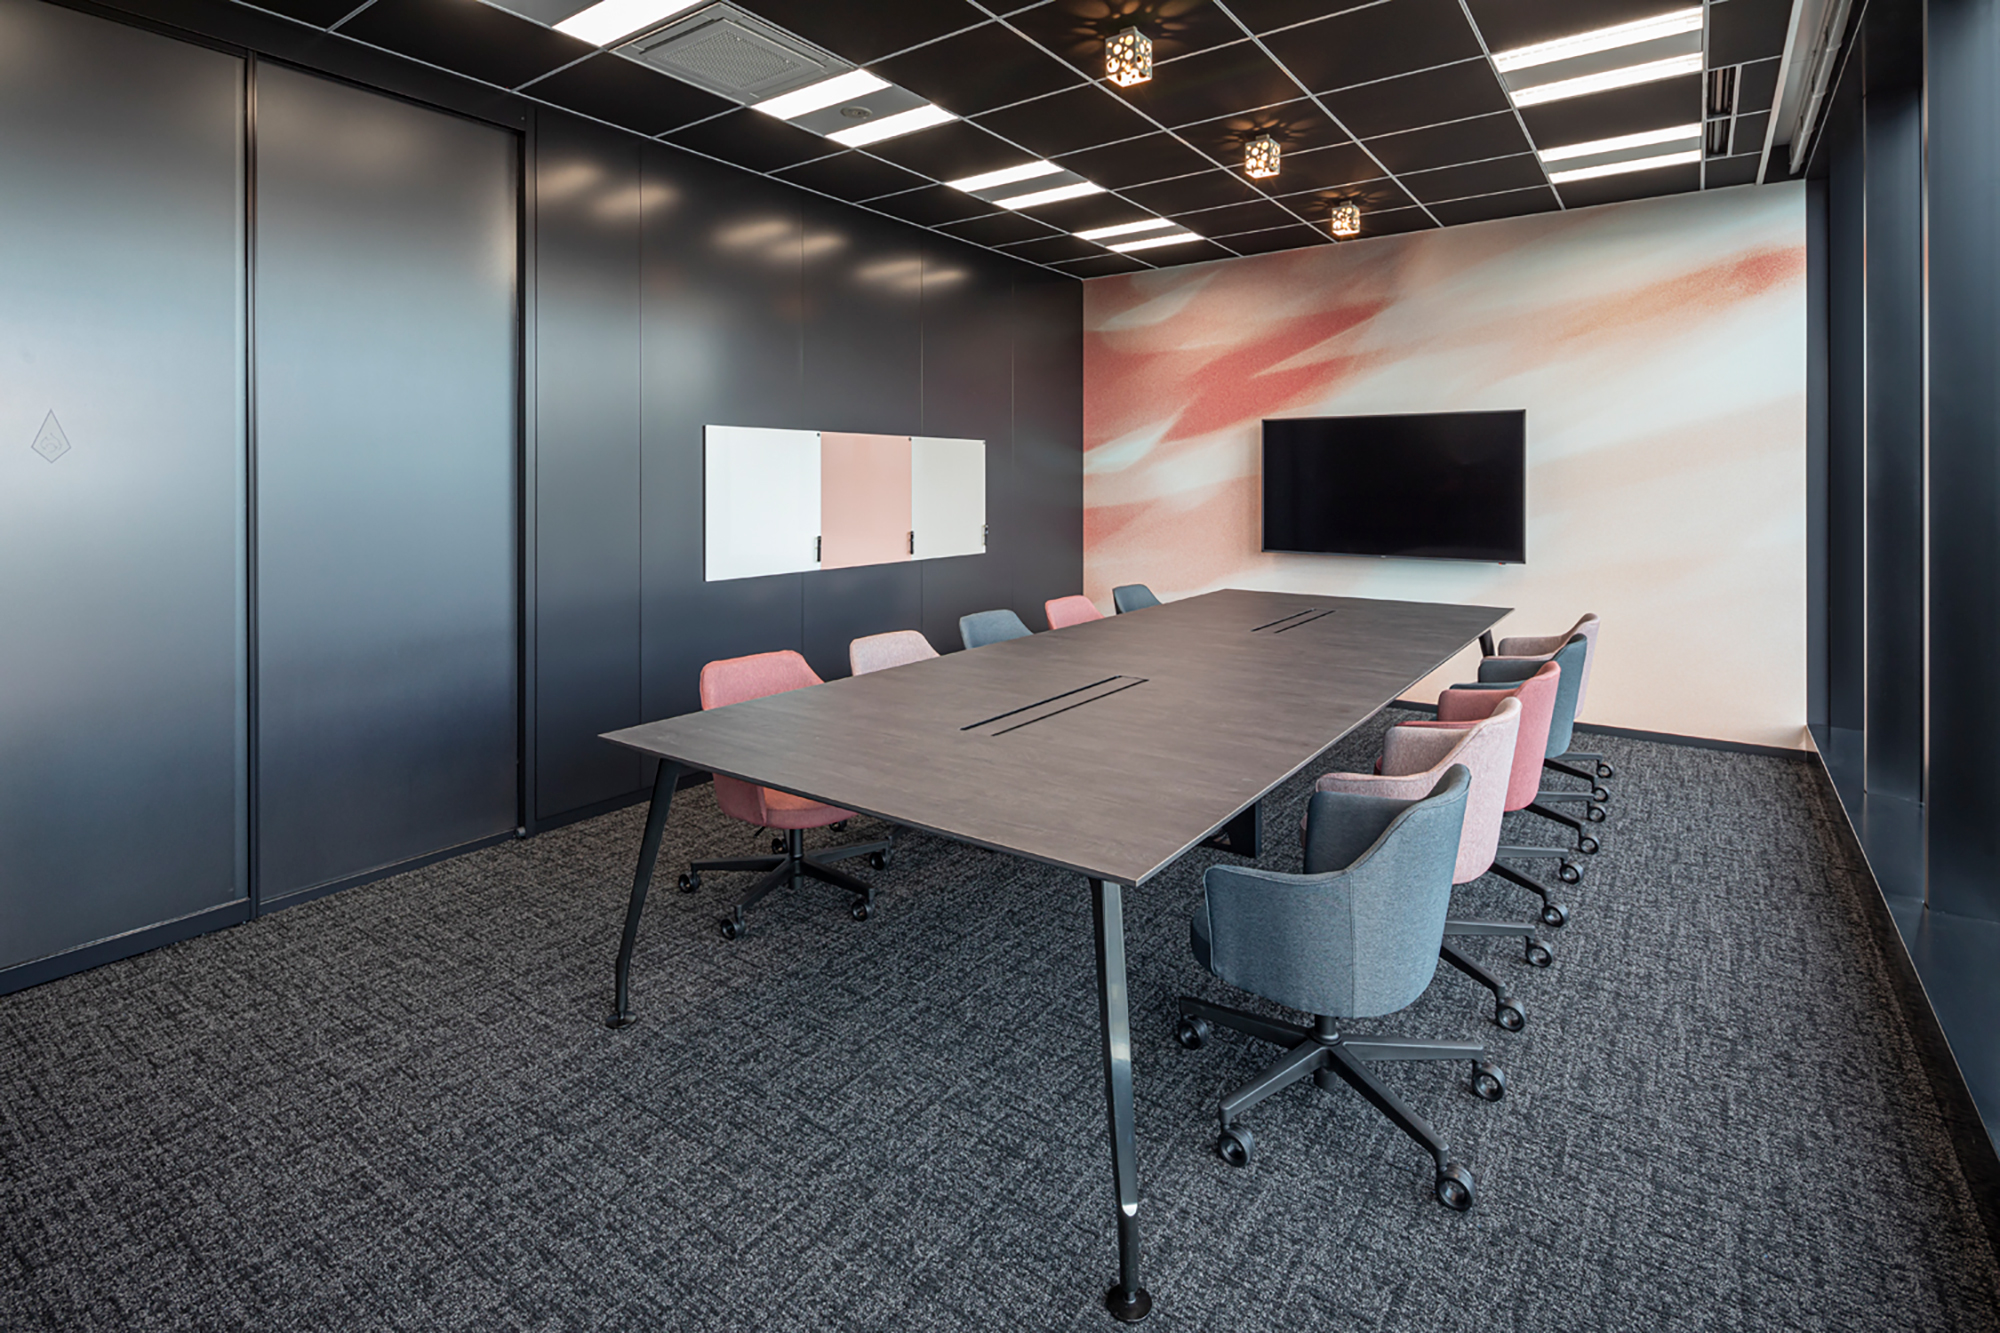 東京都千代田区のオフィス内会議室のアクセントクロスとしてピンクの揺れ動くテクスチャが特徴的なデザインを配置